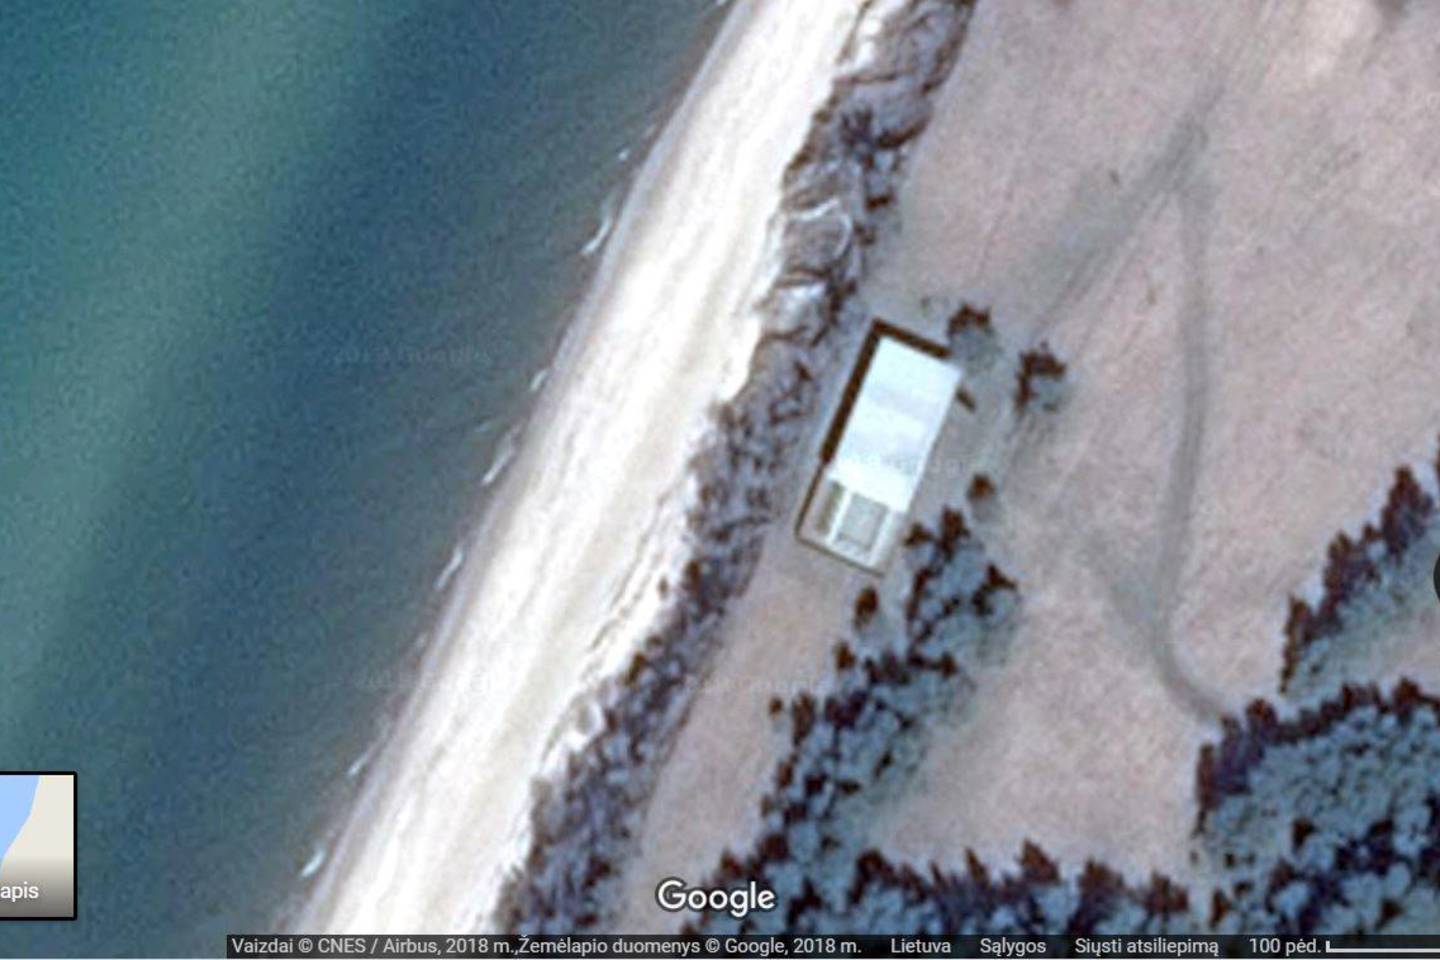  Latvijoje namas ant jūros kranto pripažintas laivu.<br> Google Maps